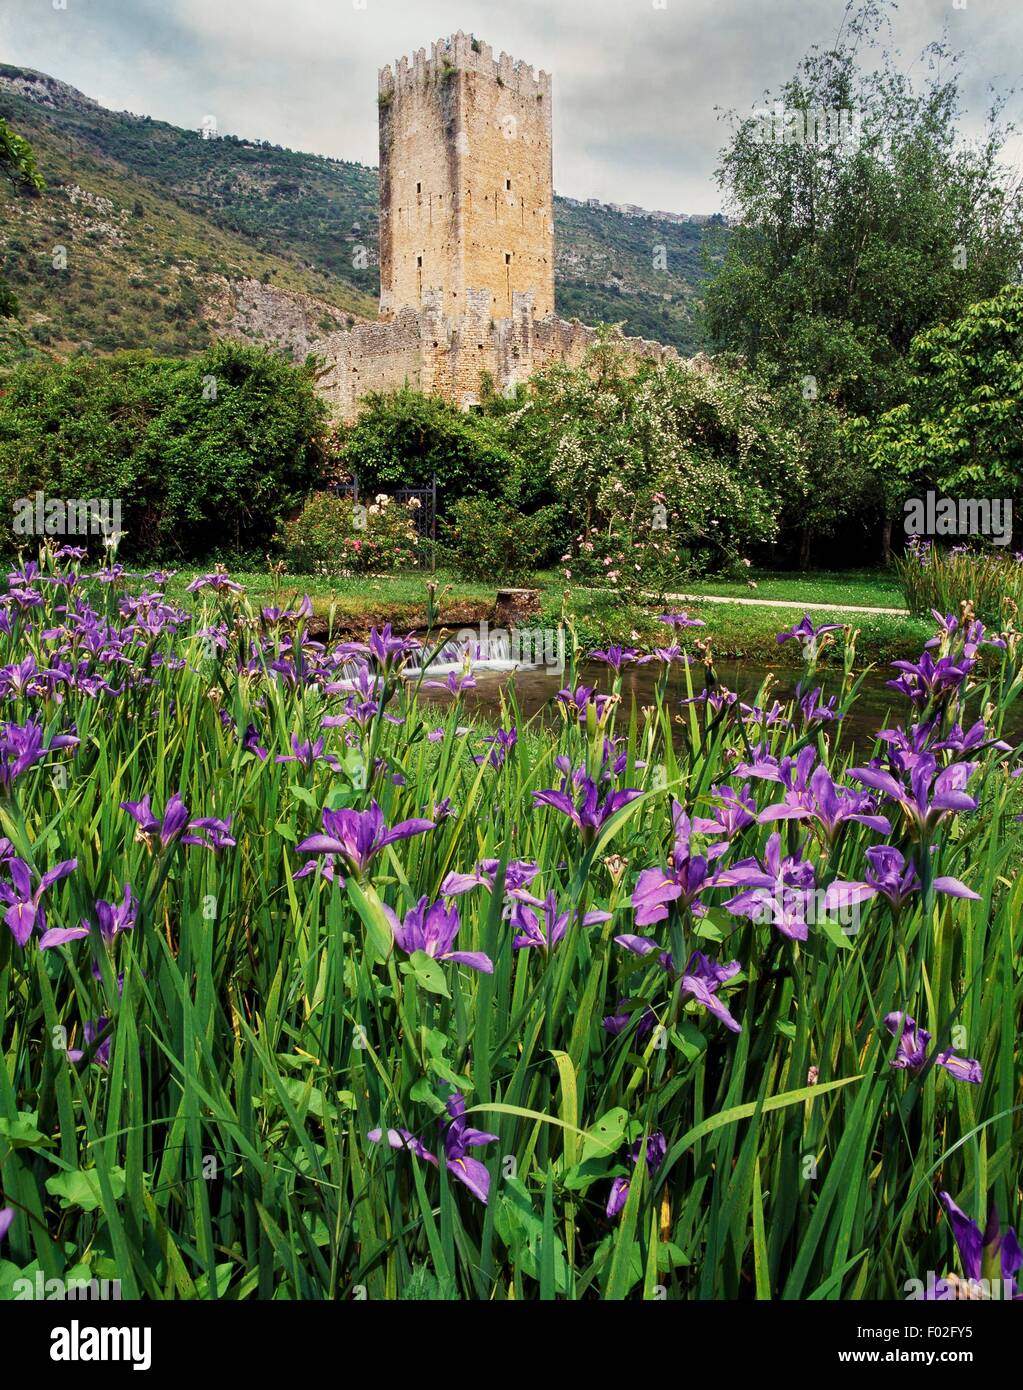 La tour de Caetani château construit au xive siècle, les iris en fleurs en premier plan, jardin de Ninfa, Cisterna di Latina, Latium, Italie. Banque D'Images